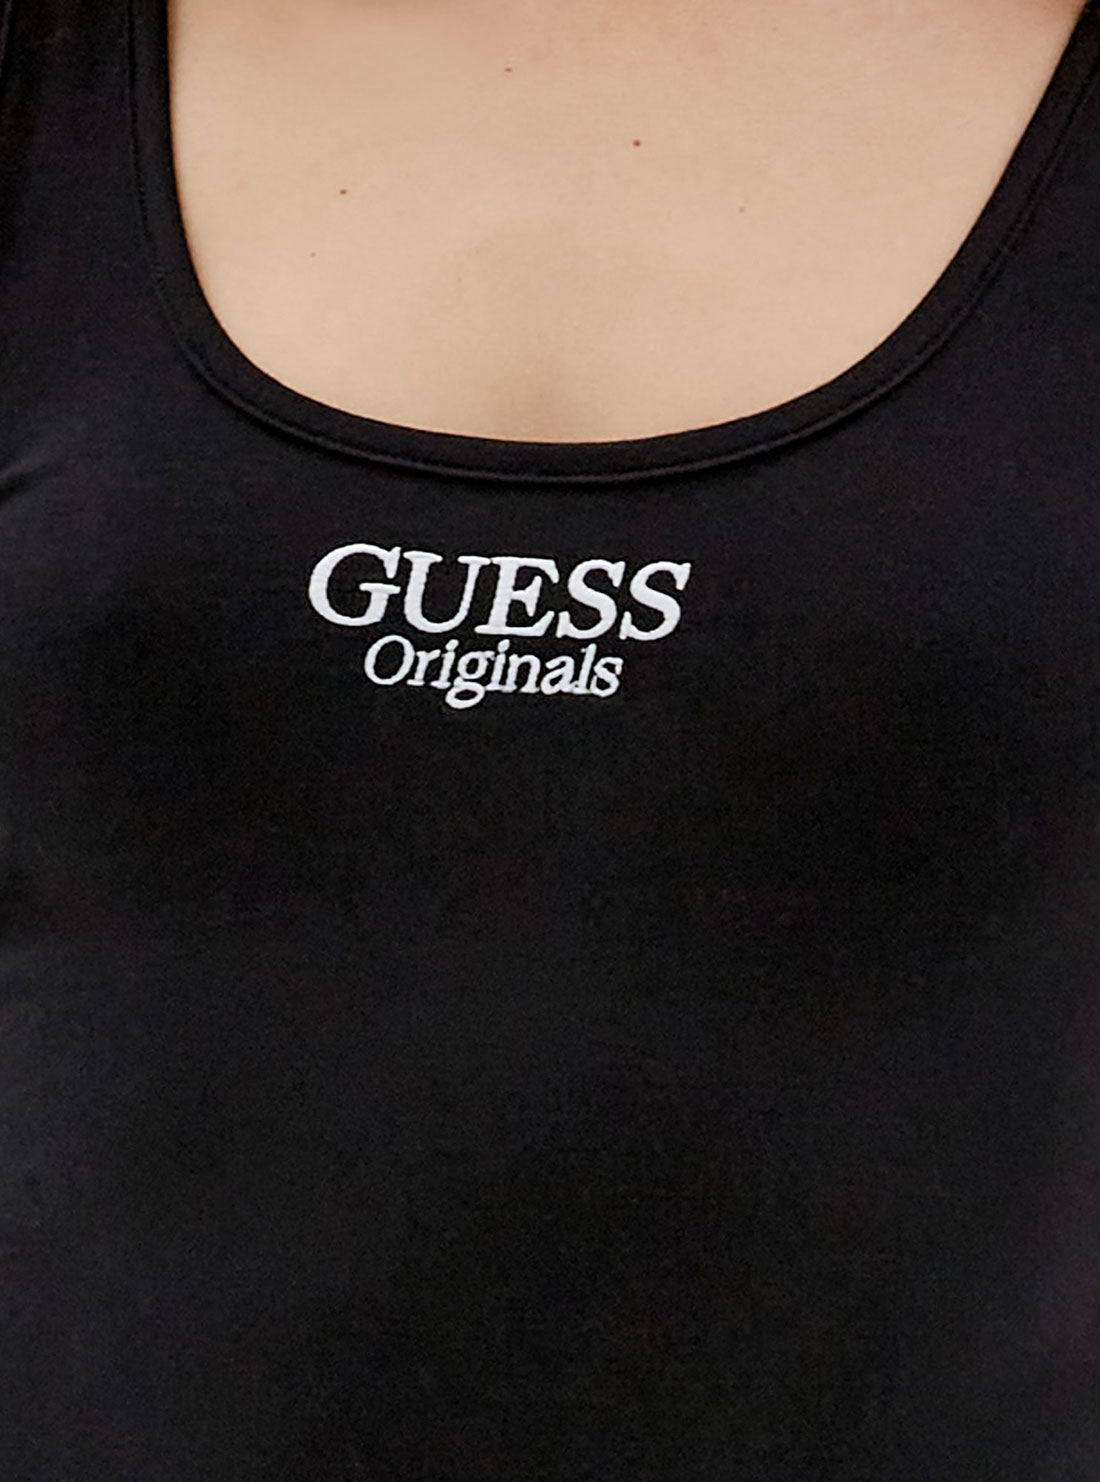 GUESS Womens Guess Originals Black Brea Bodysuit Top W2GP41K1D80 Detail View